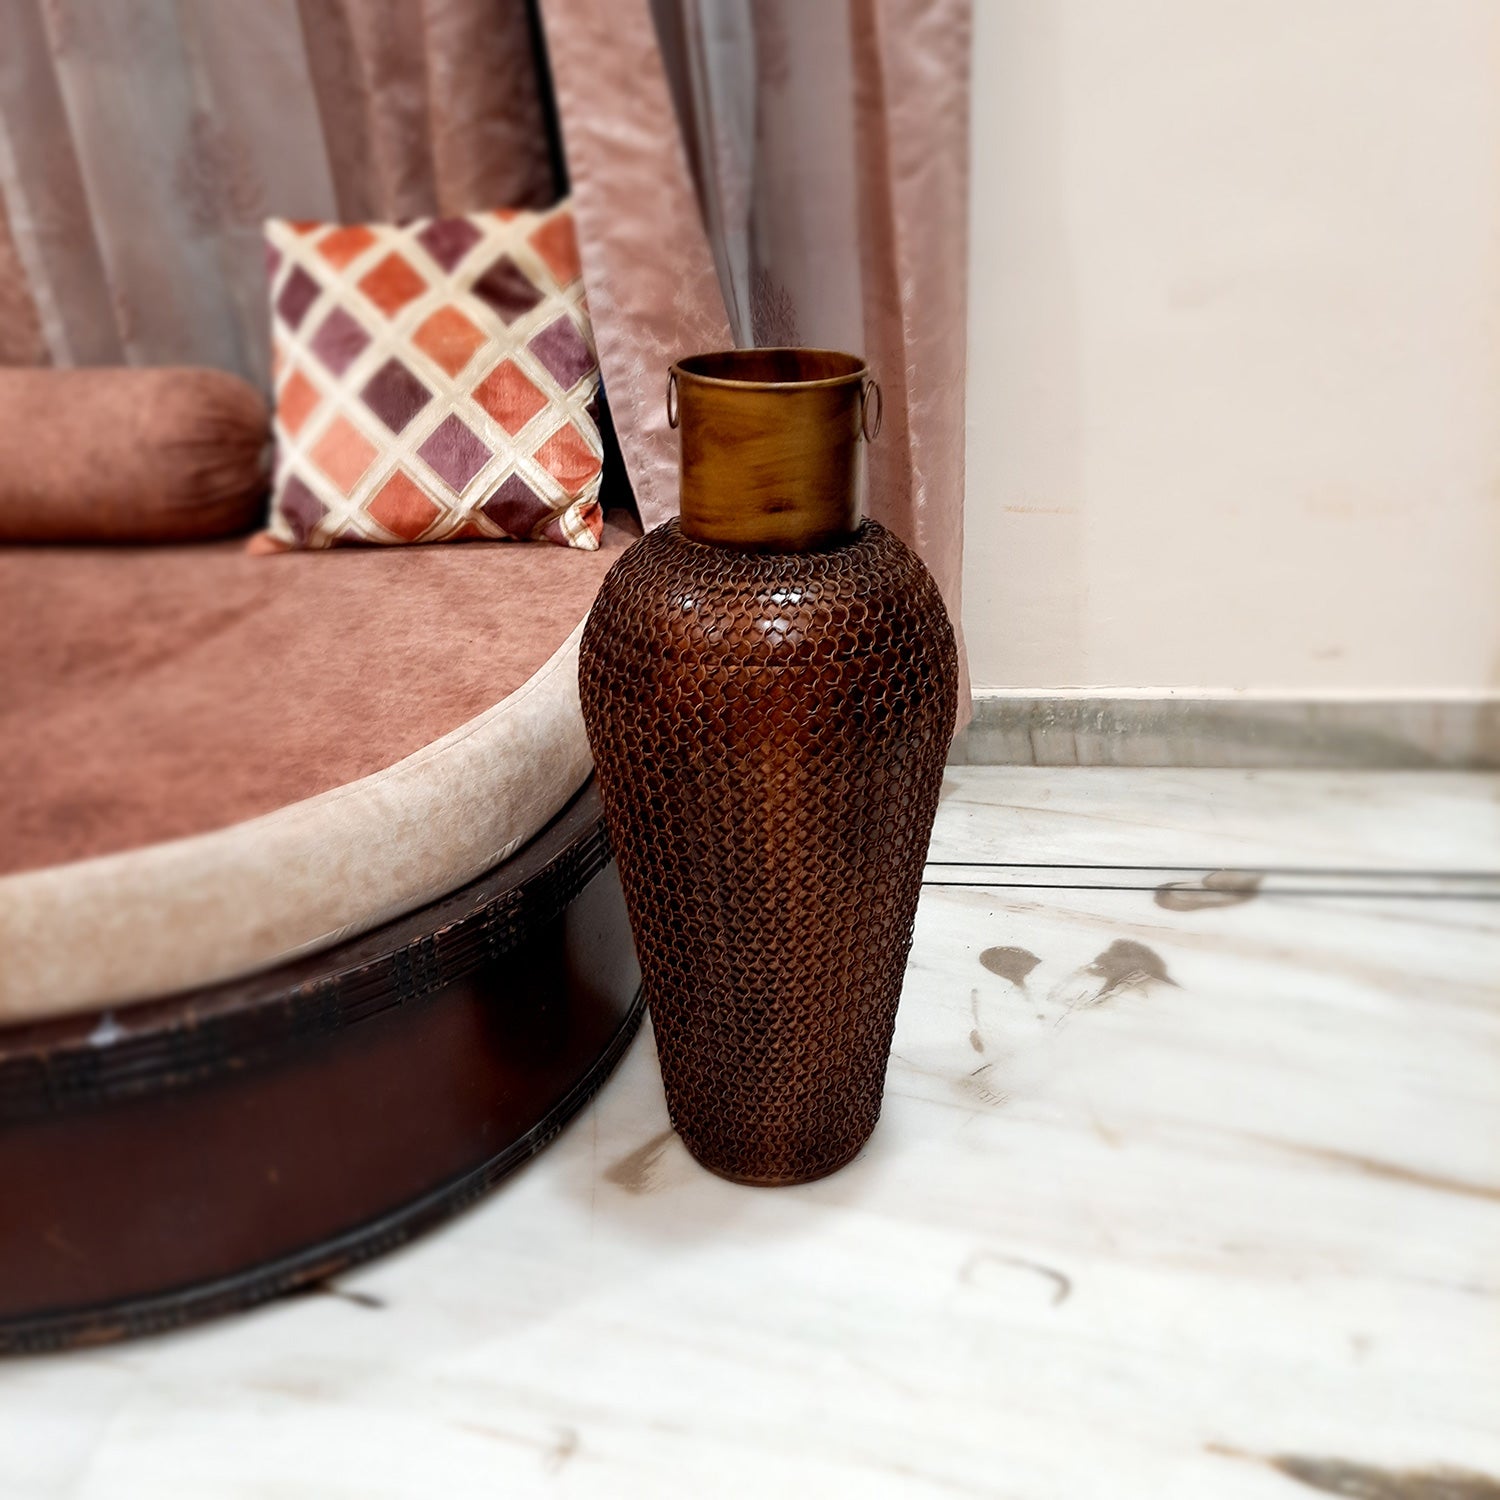 Flower Pot Big | Corner Vase Long - For Living Room, Home Decor & Gifts - 25 Inch - Apkamart